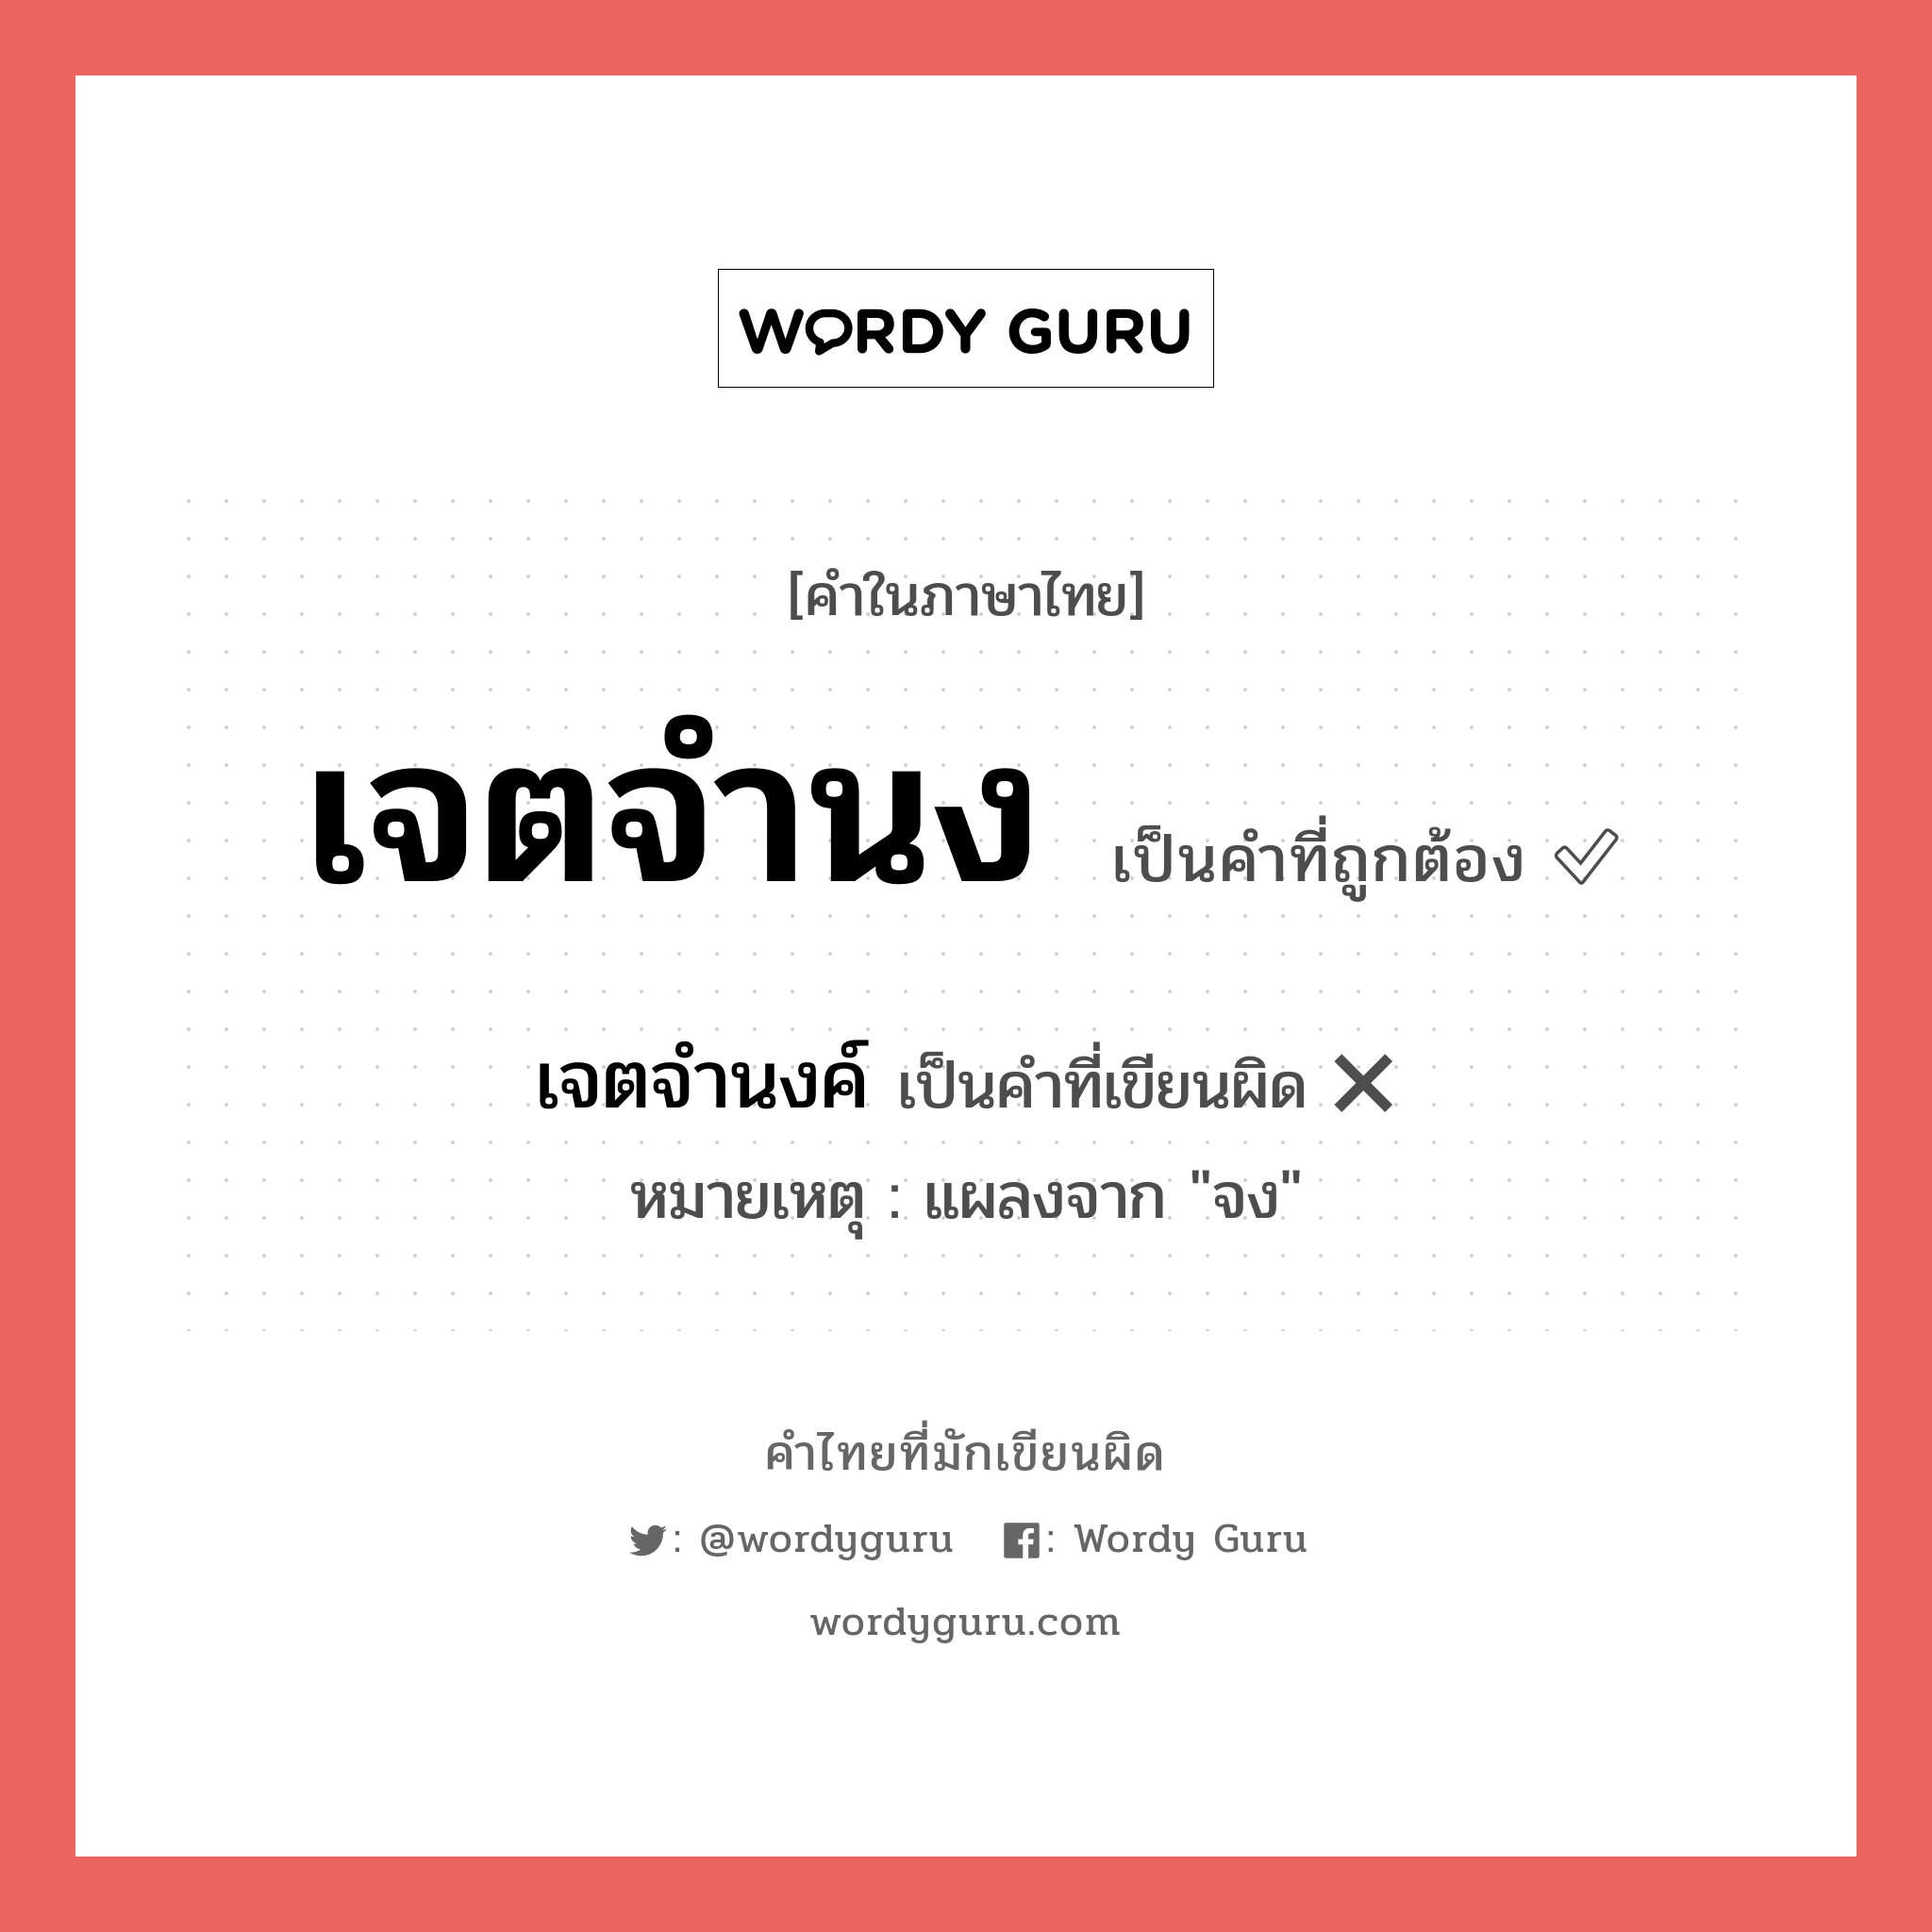 เจตจำนงค์ หรือ เจตจำนง คำไหนเขียนถูก?, คำในภาษาไทยที่มักเขียนผิด เจตจำนงค์ คำที่ผิด ❌ เจตจำนง หมายเหตุ แผลงจาก "จง"